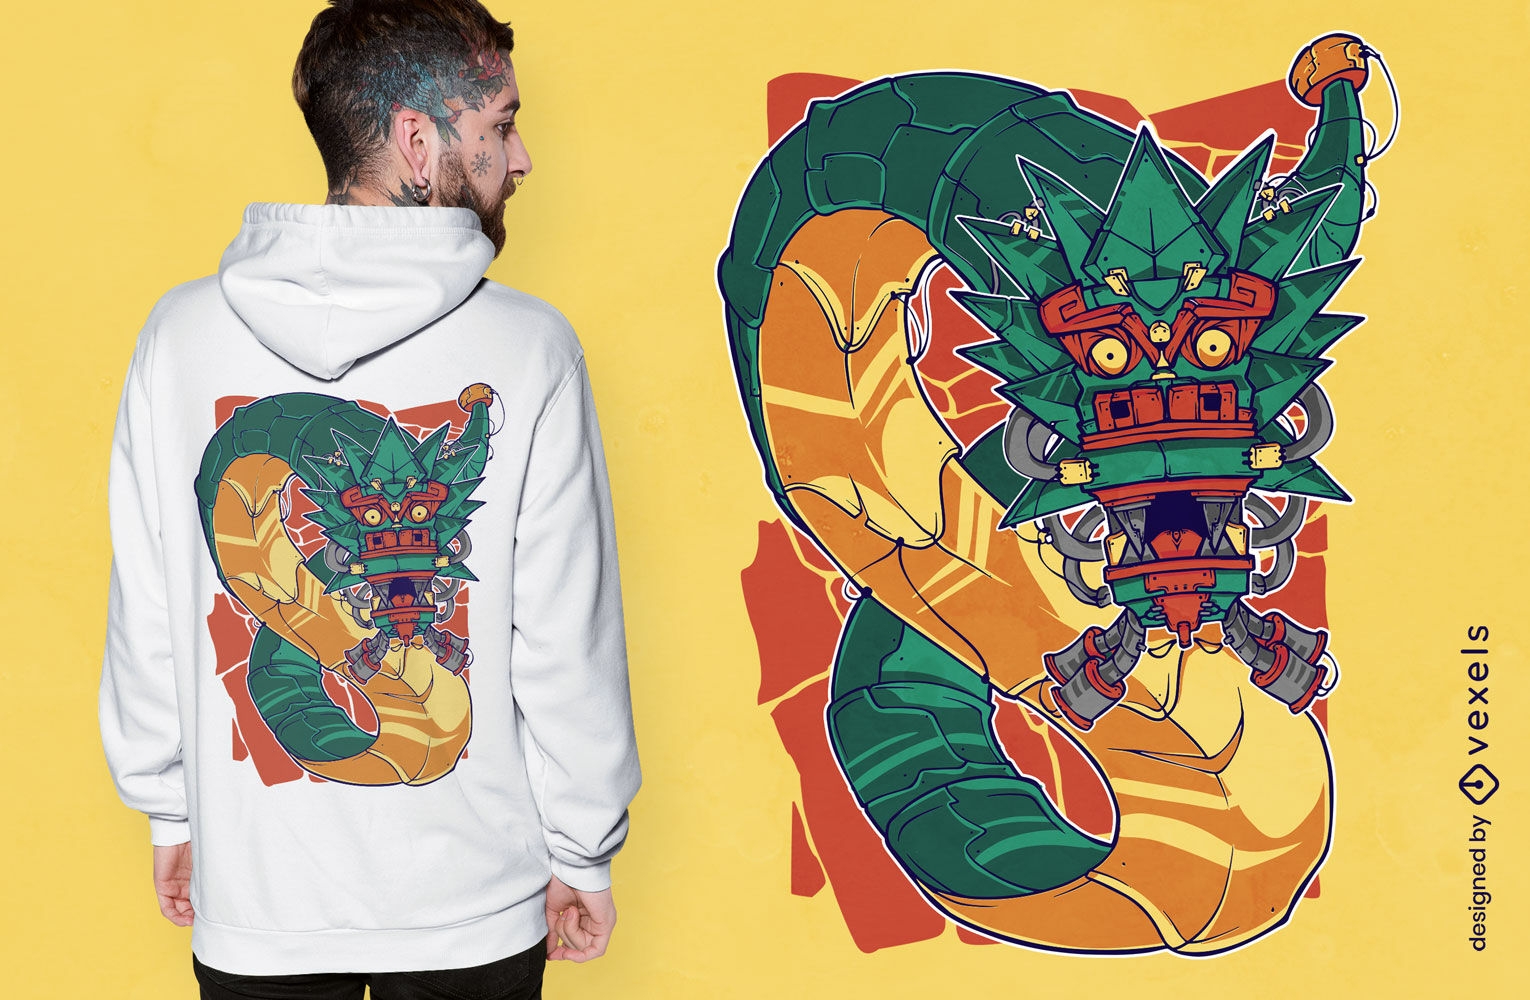 Dise?o de camiseta de la mitolog?a de Quetzalcoatl.